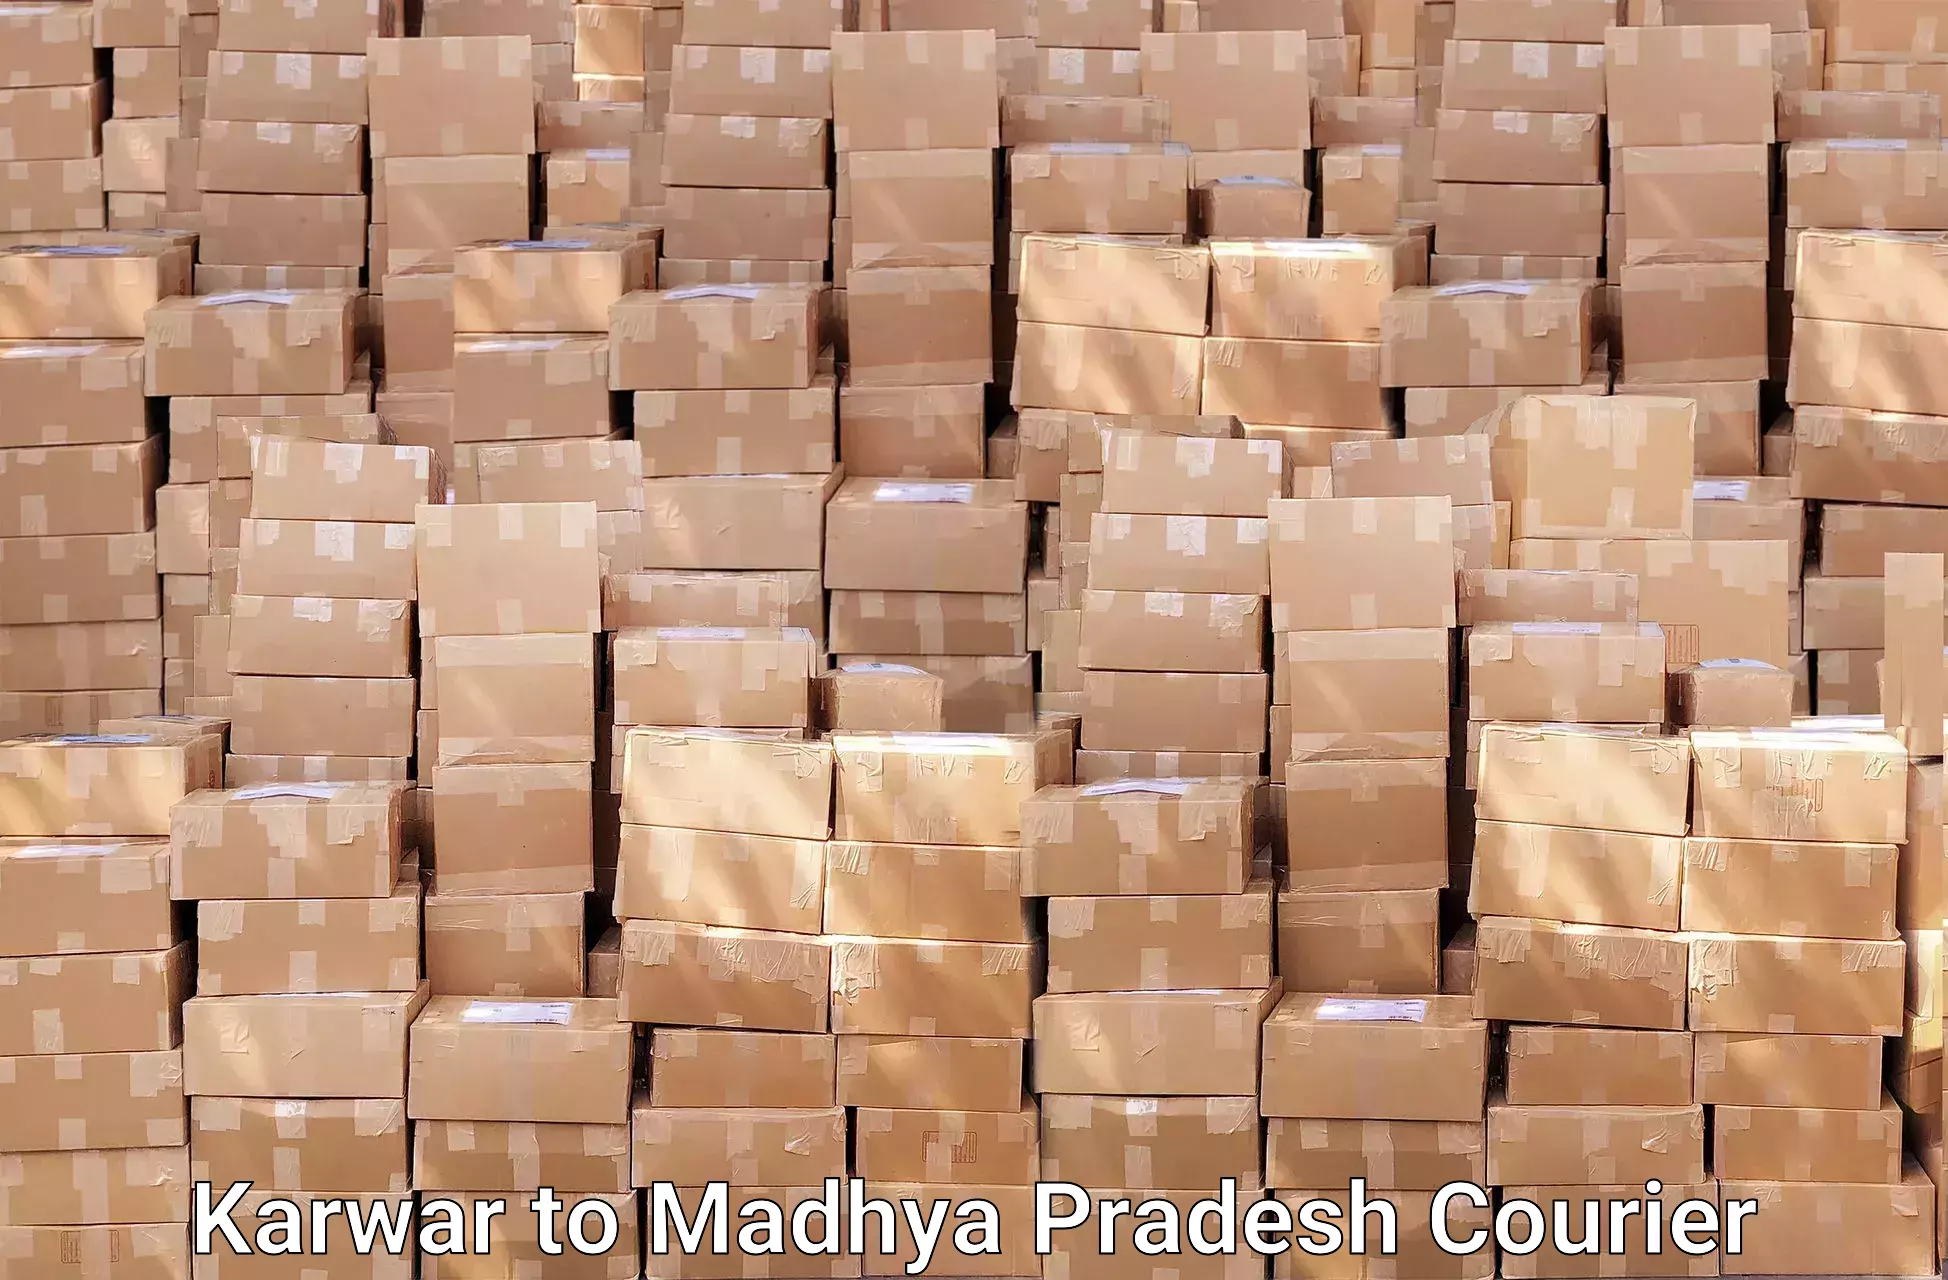 Skilled furniture transporters Karwar to Madhya Pradesh